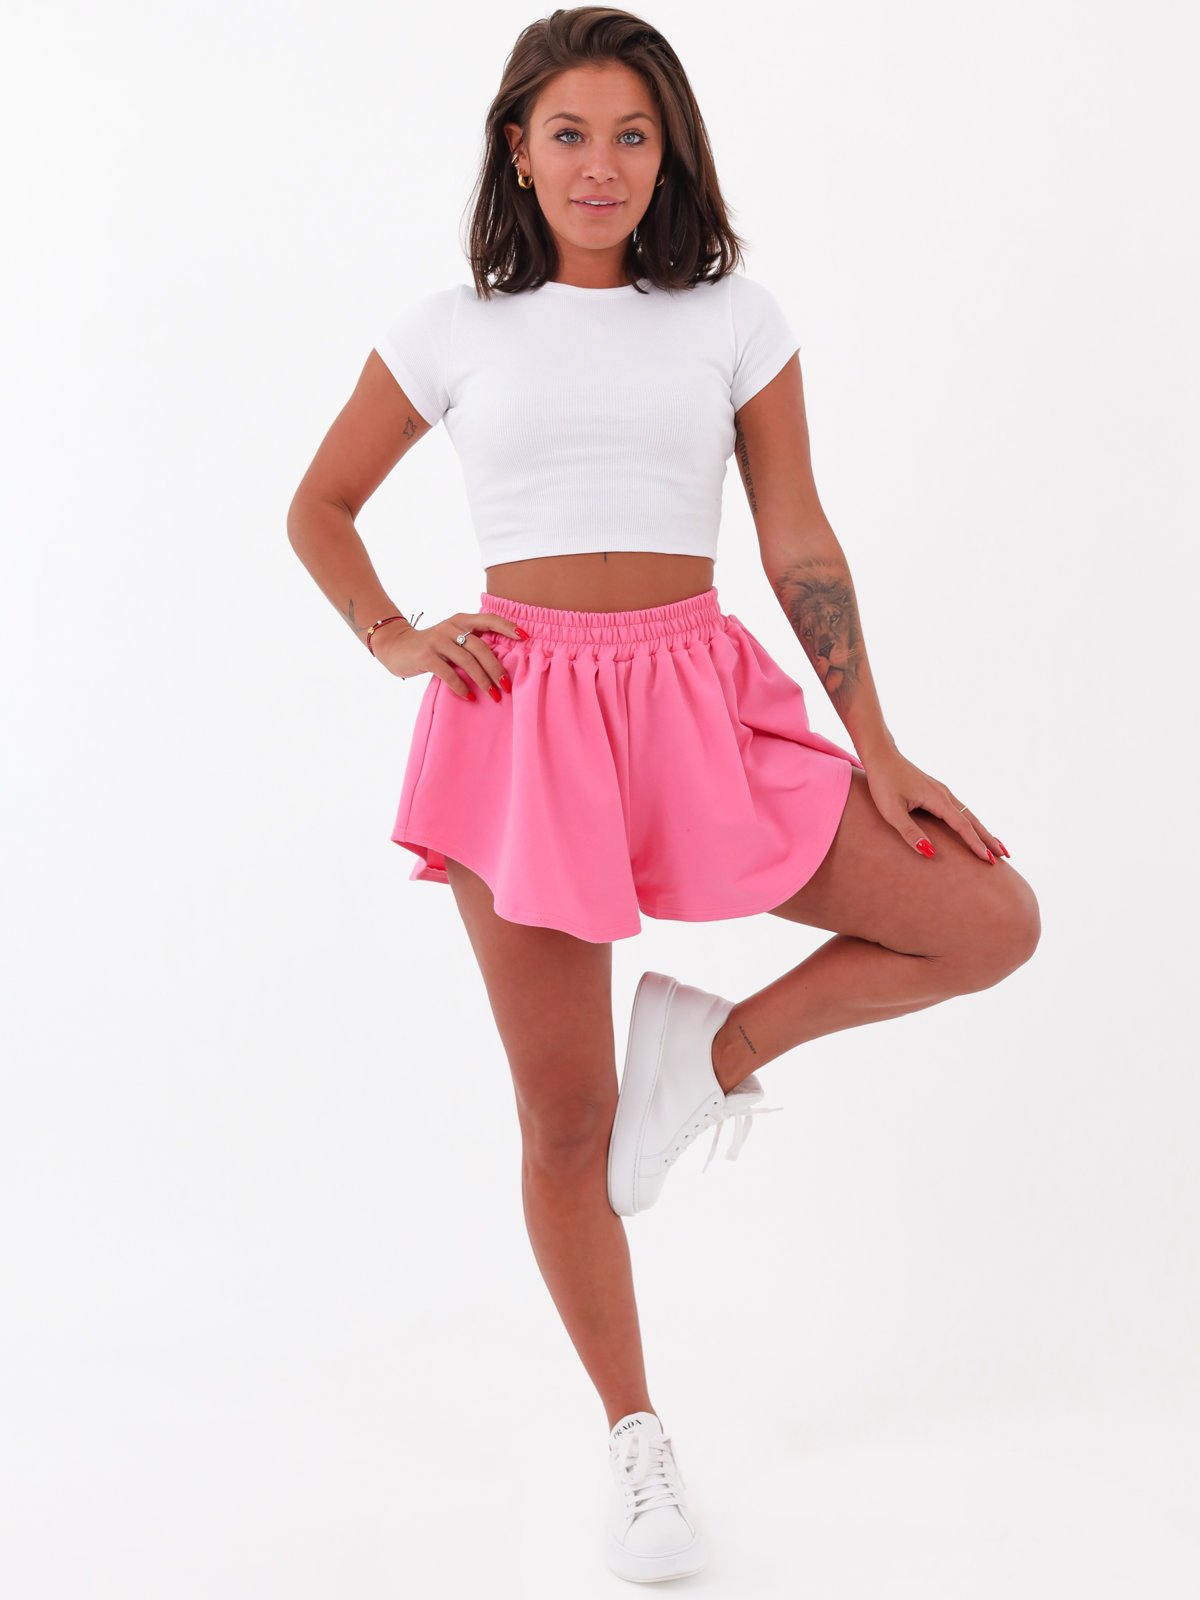 Asymmetrical cotton sweatpants shorts pink b136